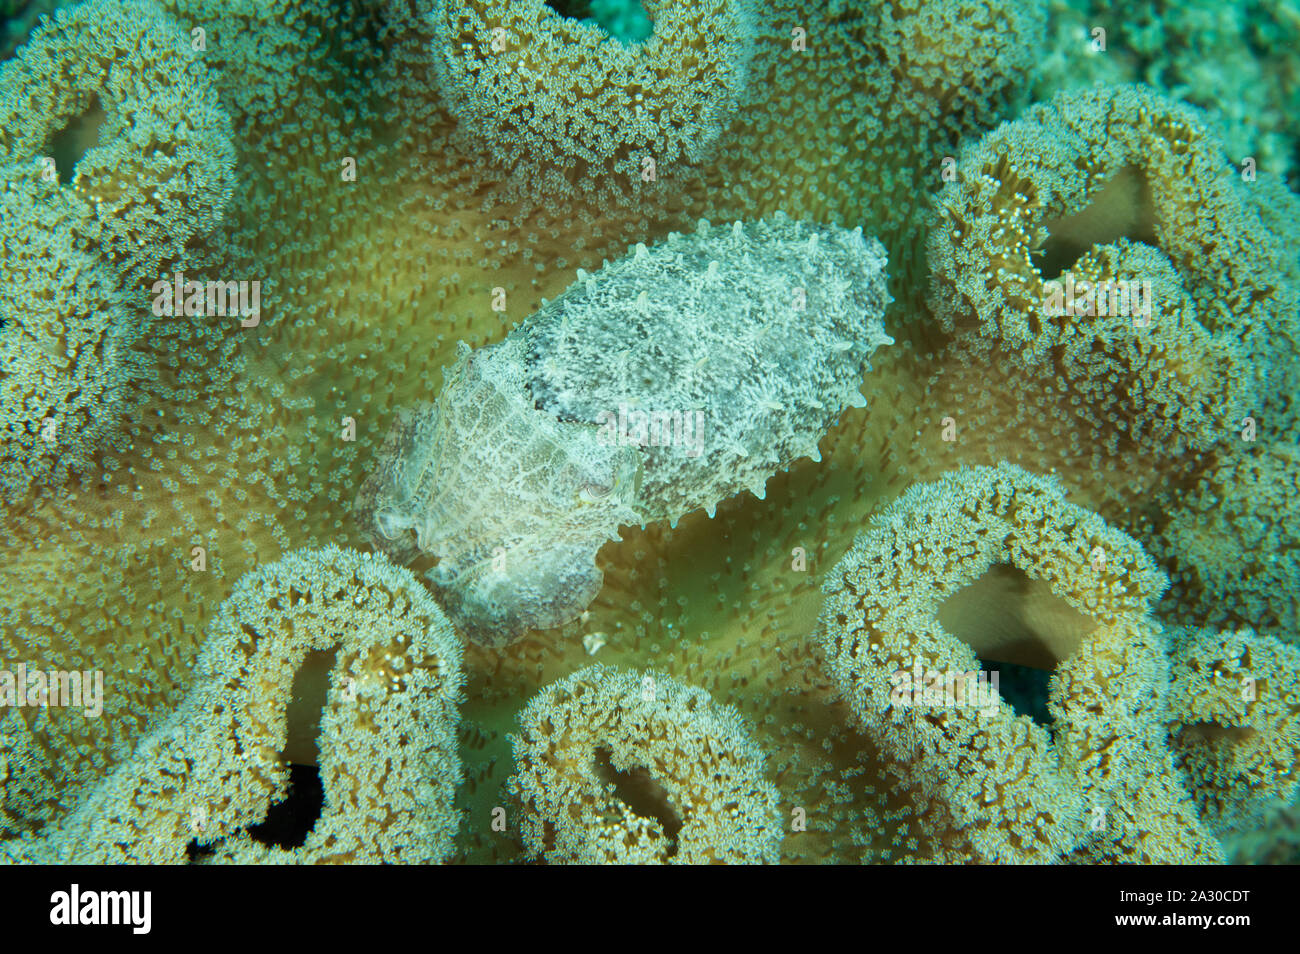 Pygmy oder Stumpy spined Tintenfisch, Sepia bandensis, versteckt in einem Leder coral Sulawesi, Indonesien. Stockfoto